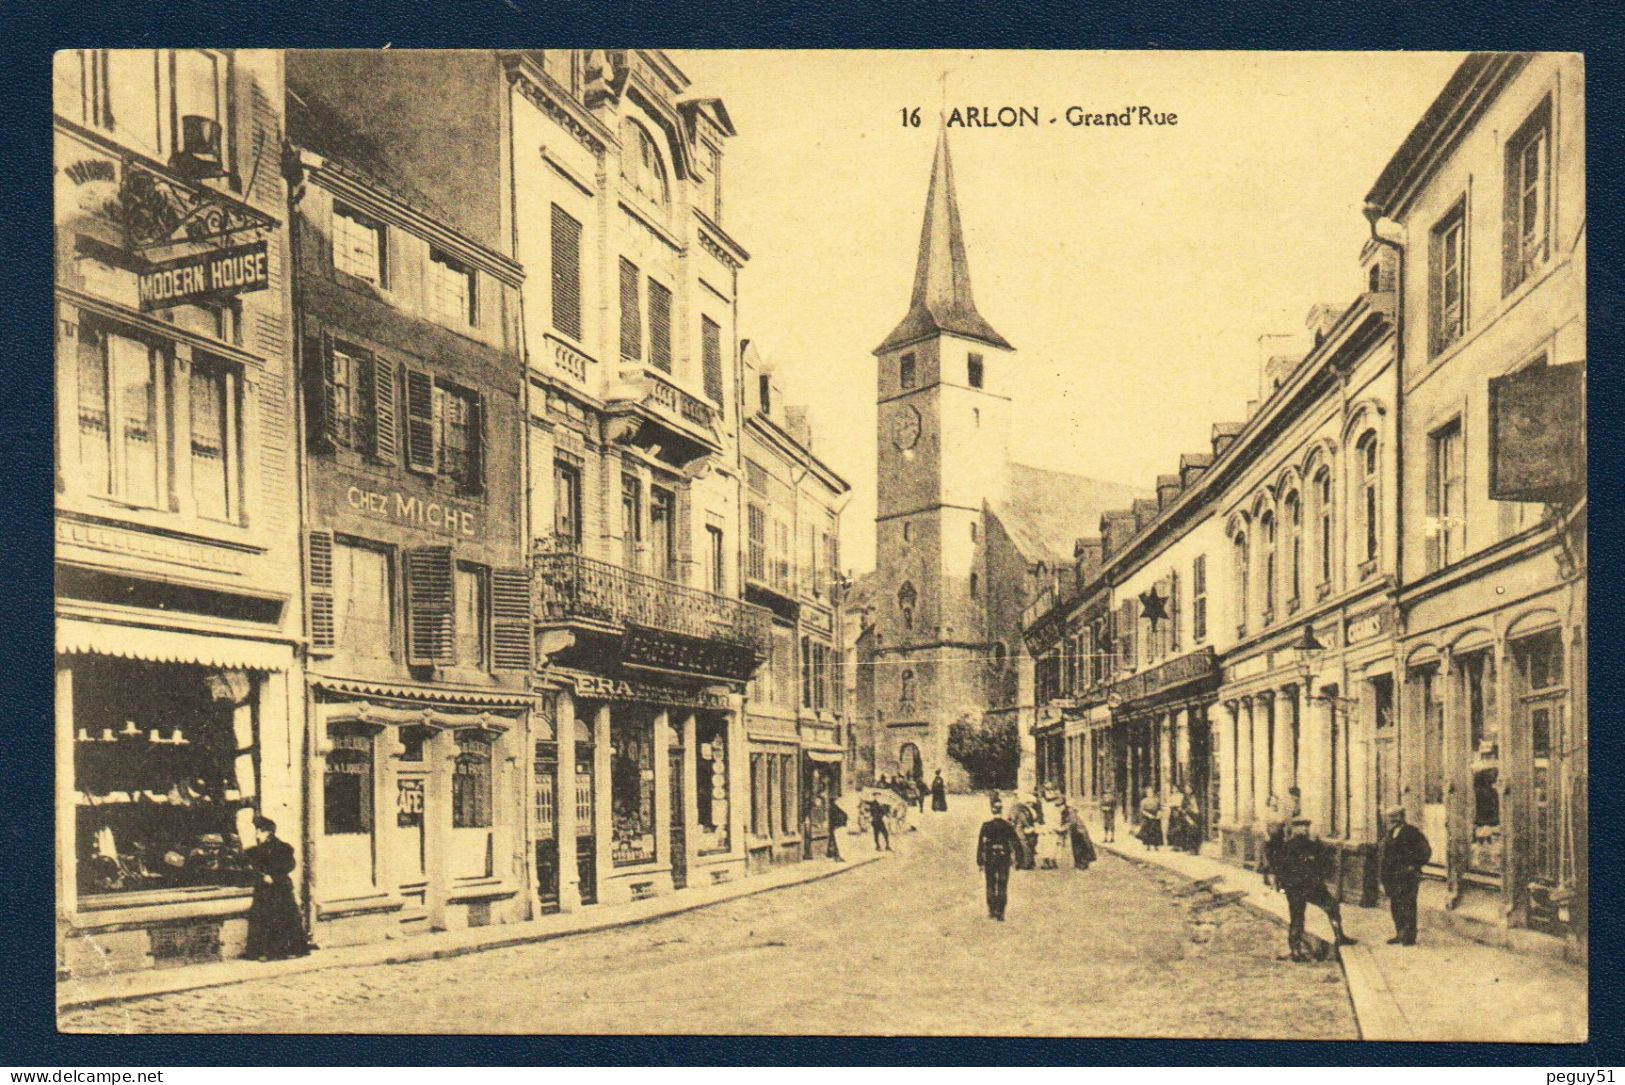 Arlon. Grand' Rue. Ancienne église St. Martin. Epicerie ERA. Café Chez Miché. Modern House. Passants.1921 - Aarlen